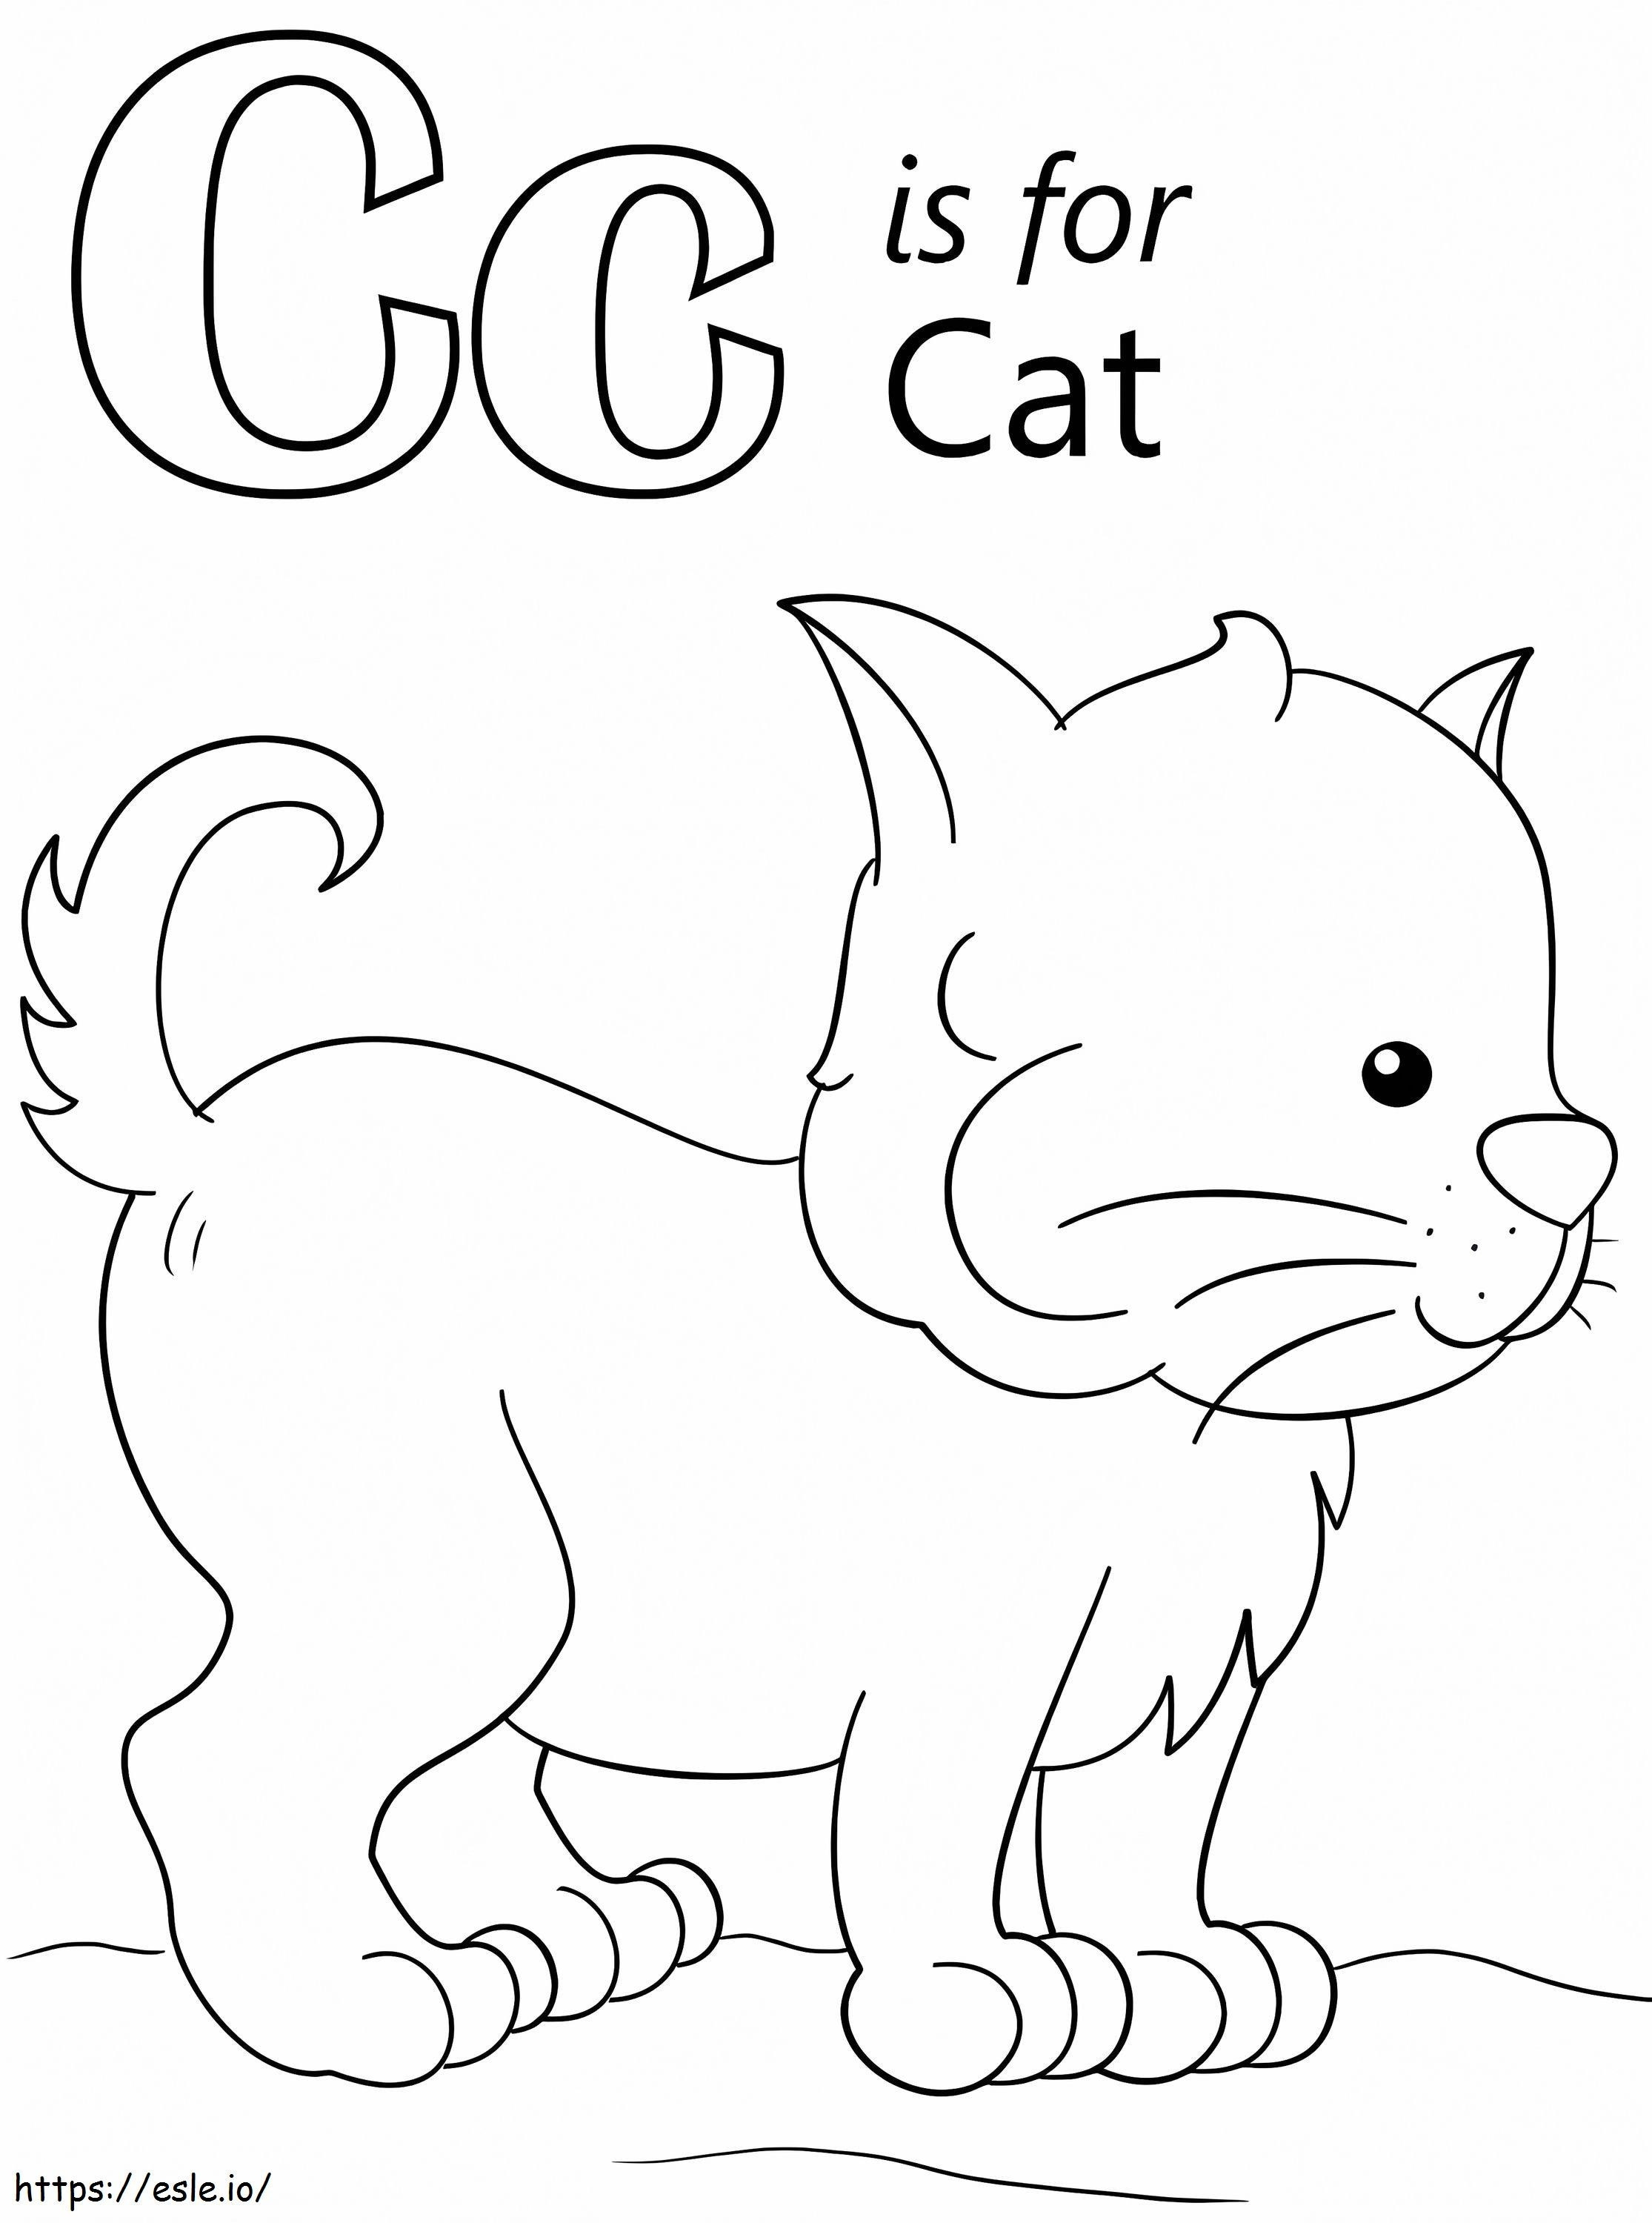 C macska betű kifestő